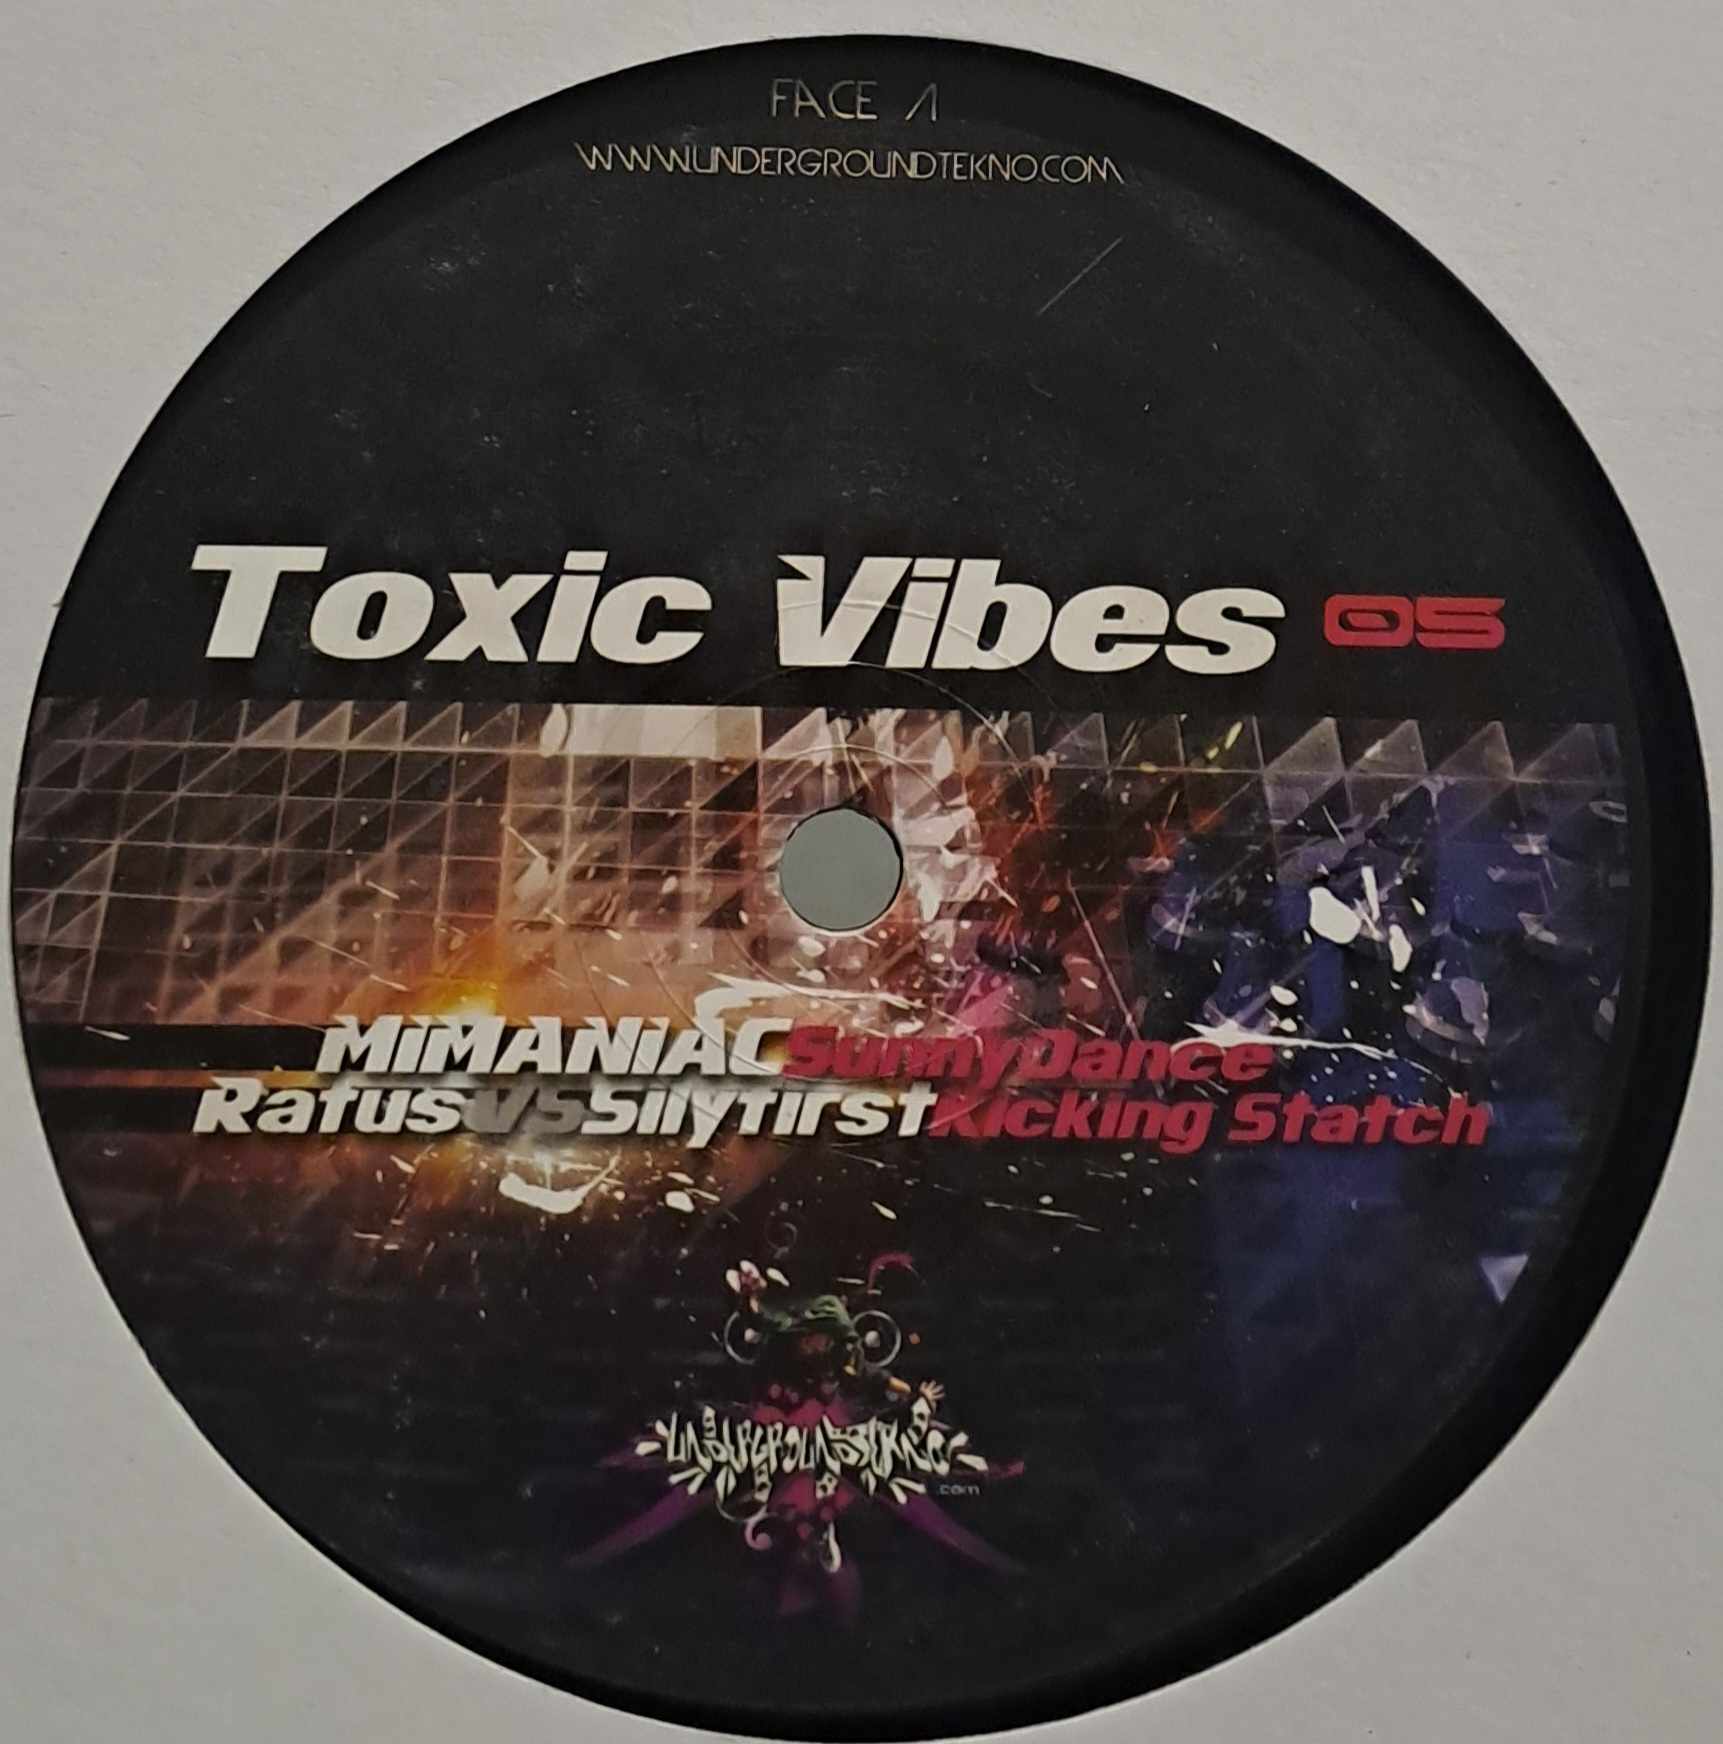 Toxic Vibes 05 - vinyle dubstep